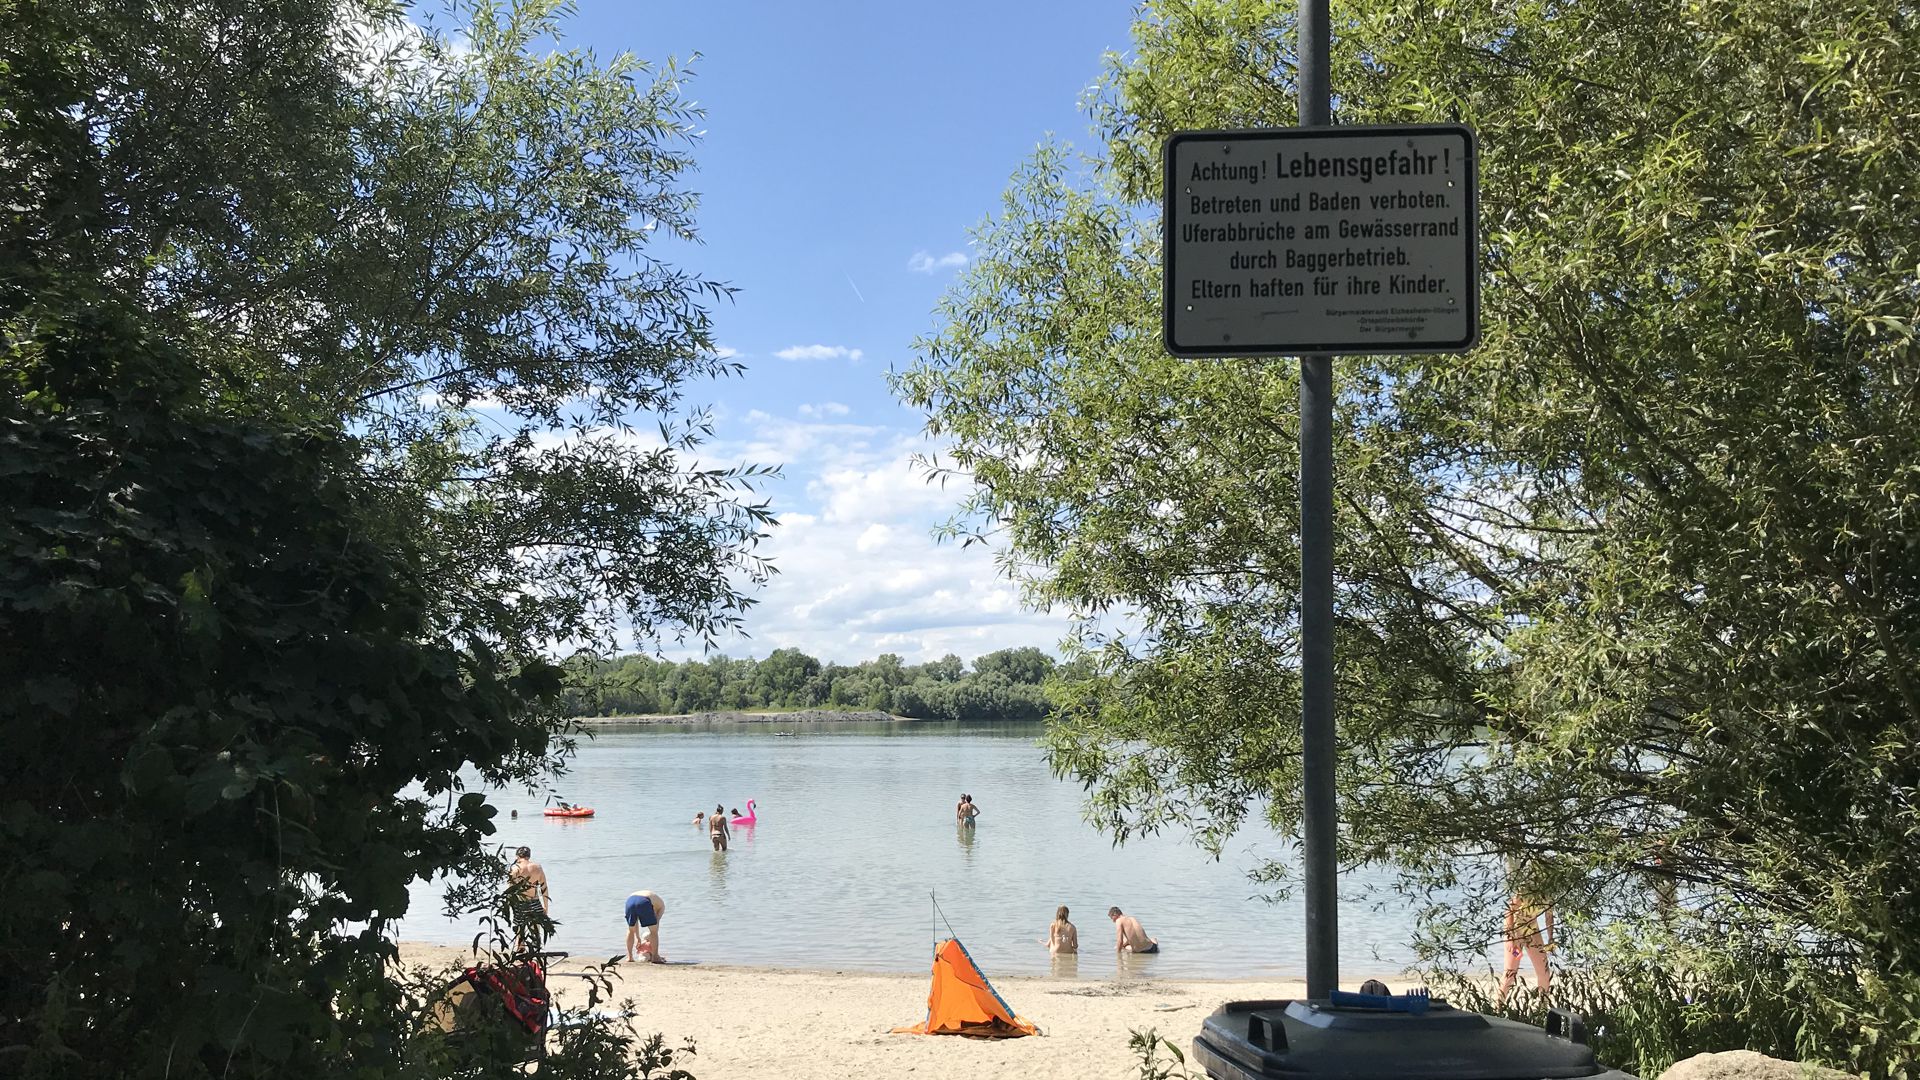 Badetag am Baggersee: Der Goldkanal bei Elchesheim-Illingen lockt Besucher aus dem Umland herbei. Offiziell ist das Baden jedoch verboten.